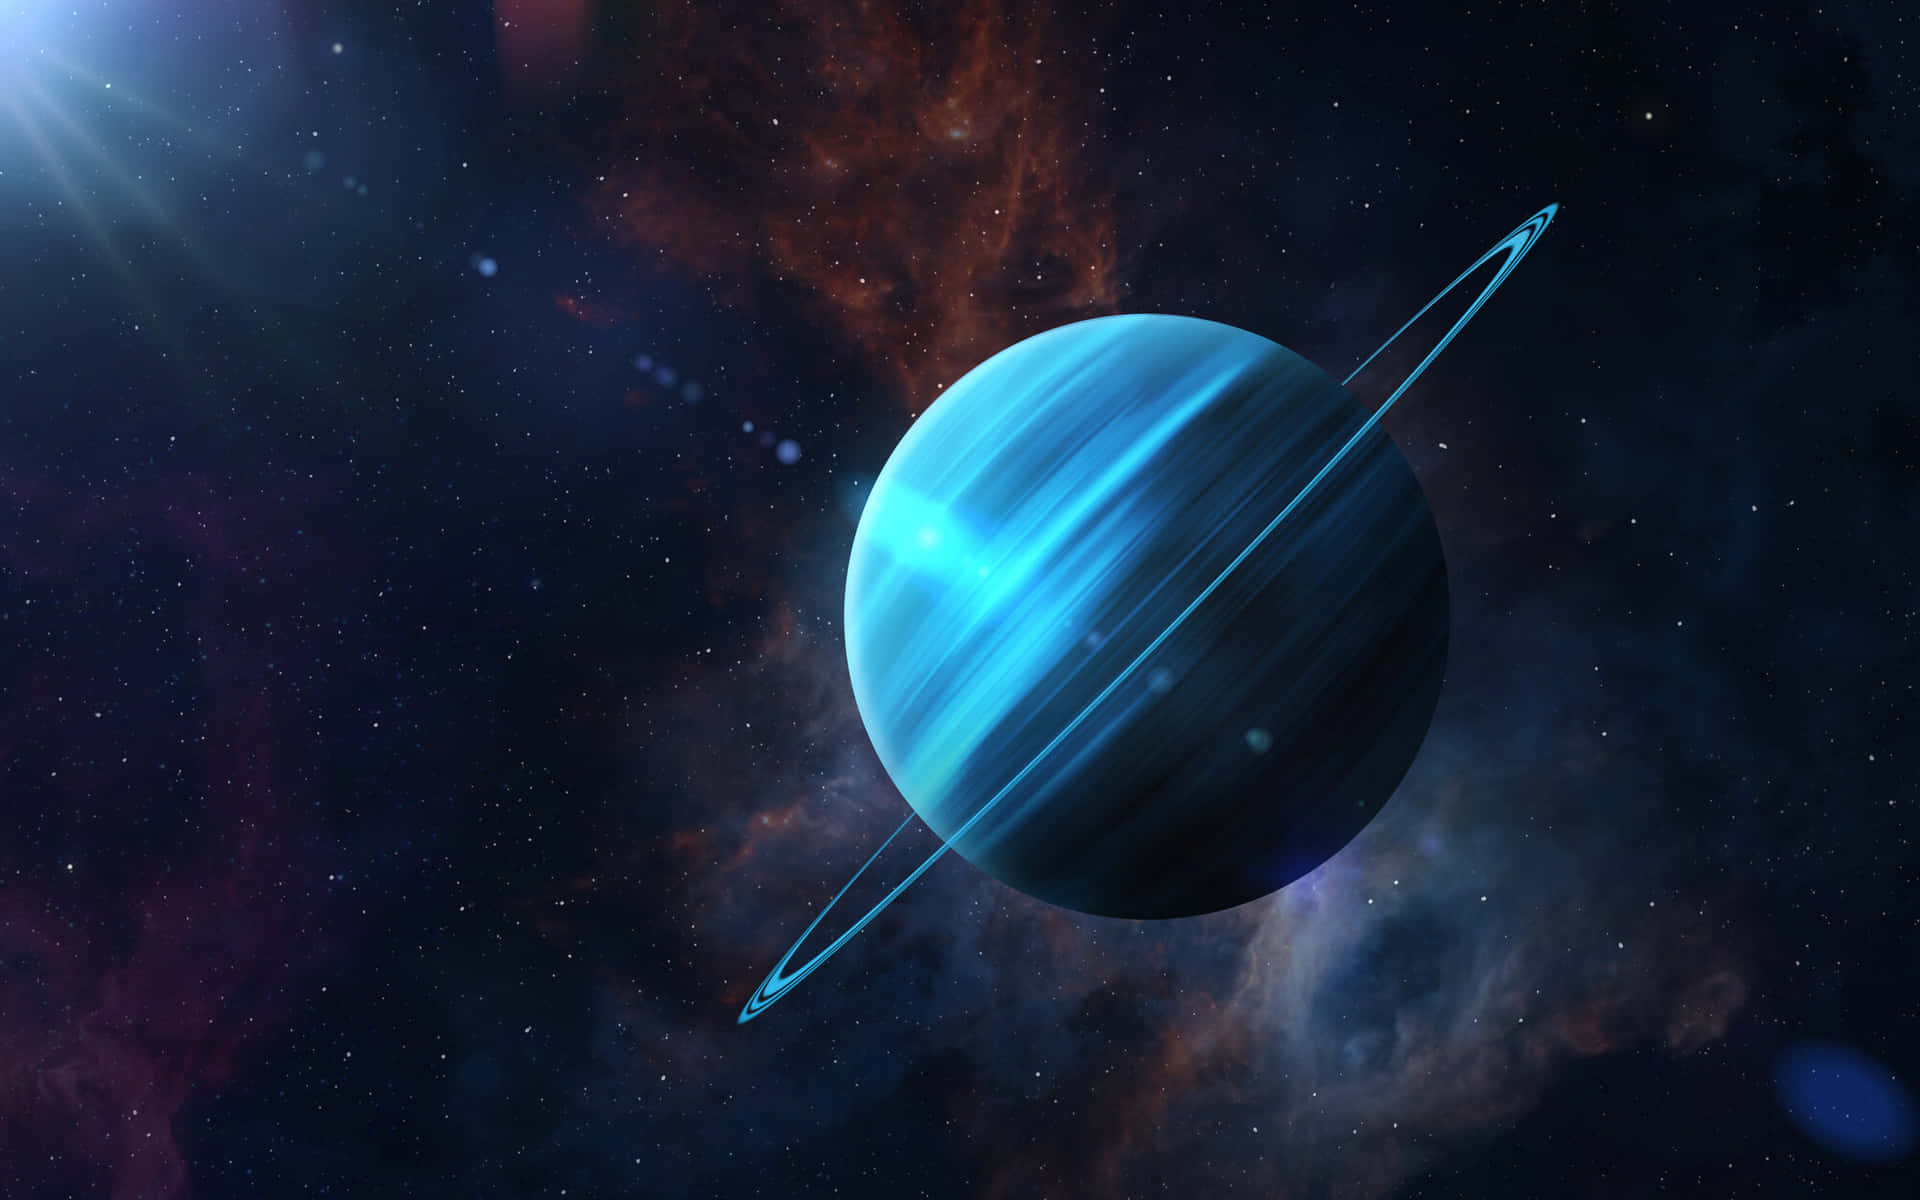 Uranusbild Mit Den Maßen 2000 X 1250